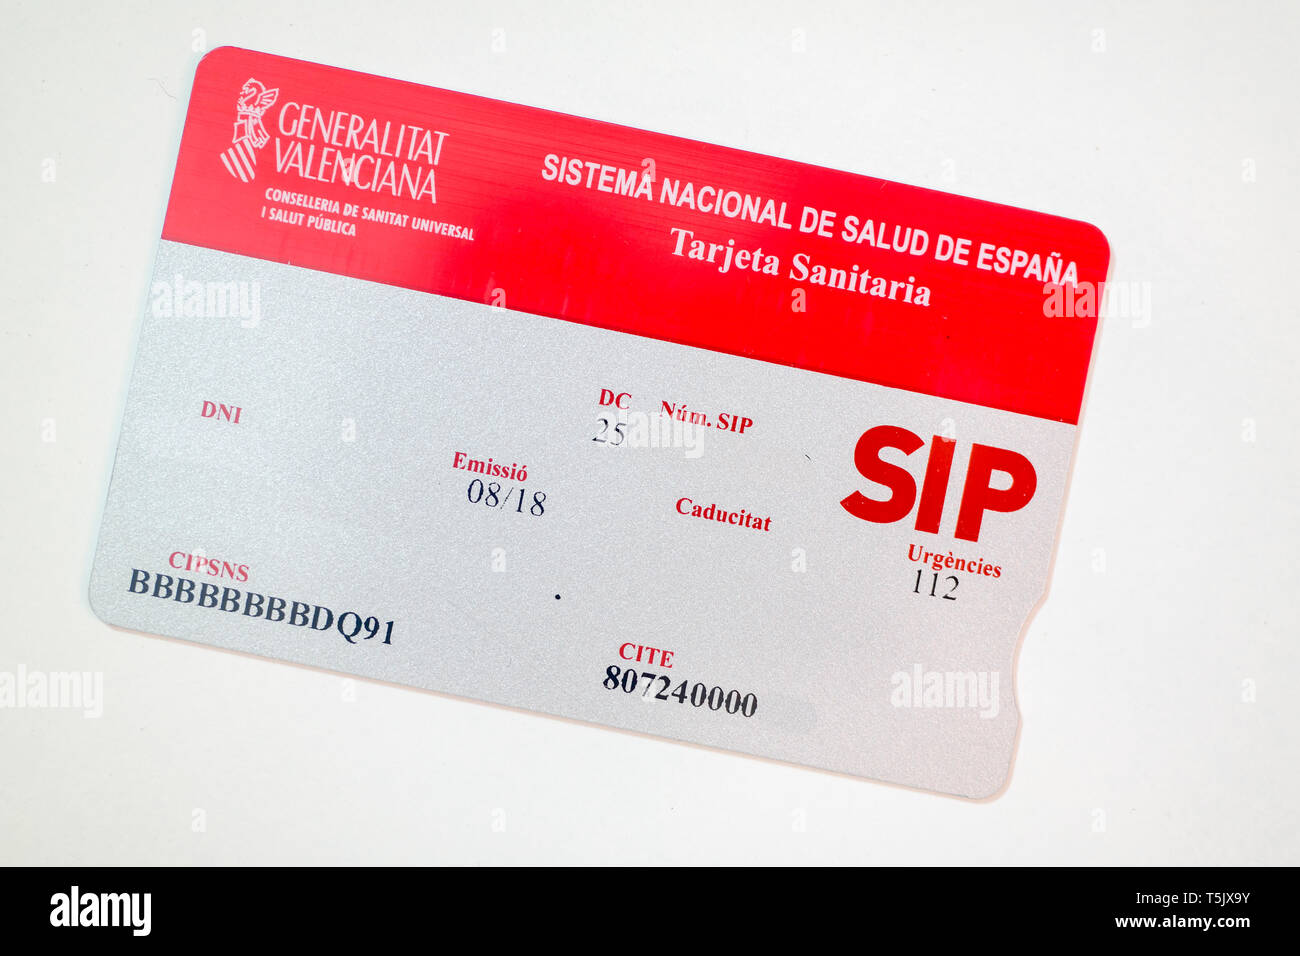 SIP scheda sanitaria della Spagna Foto Stock